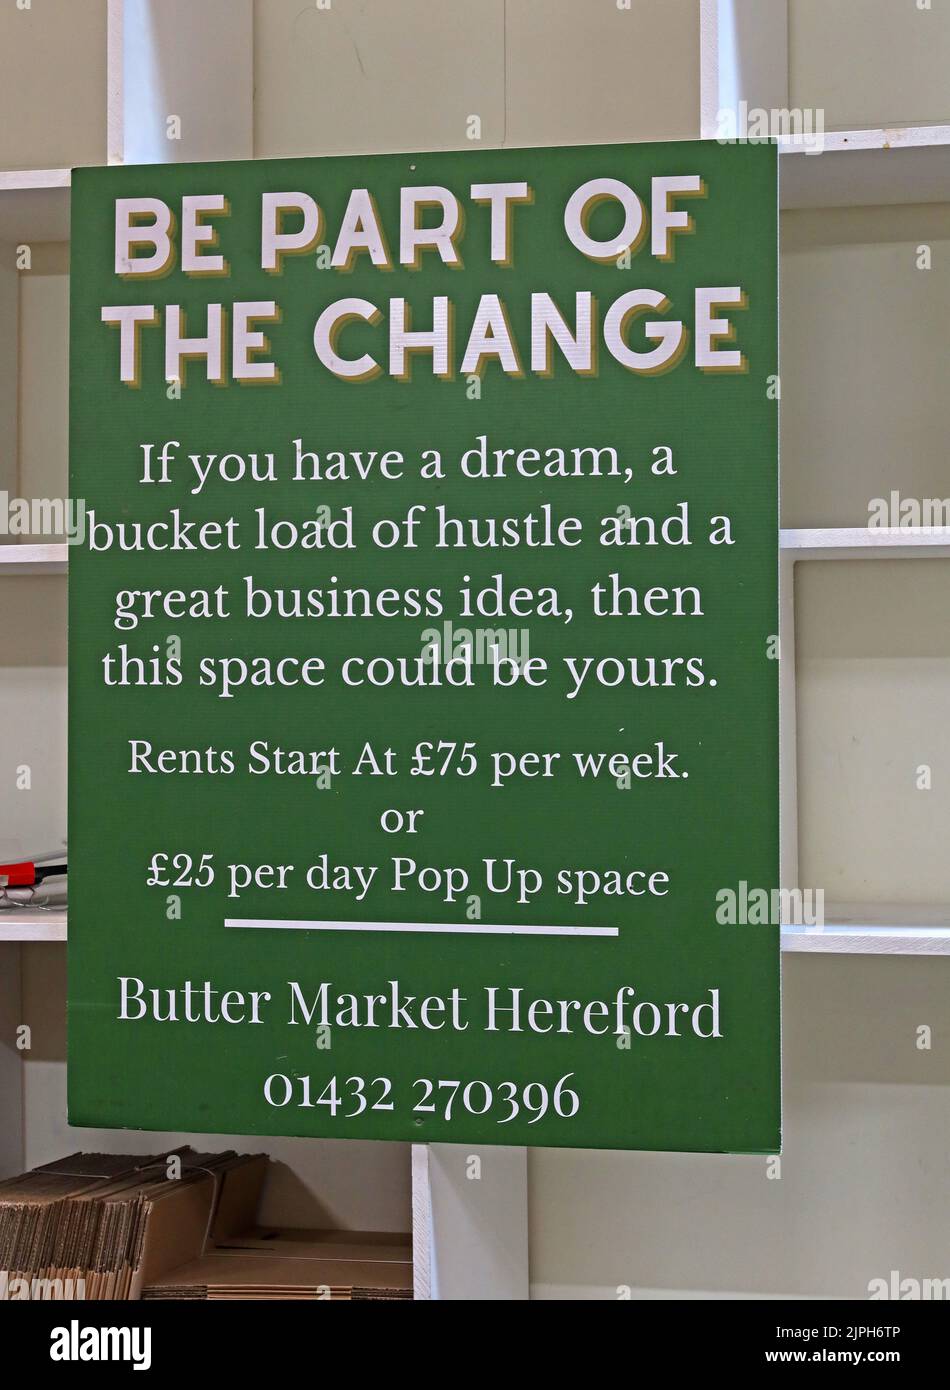 Faites partie du changement - panneau au Butter Market, Hereford, invitant de nouvelles entreprises, stands ou pop up espace, à partir de £25 par jour Banque D'Images